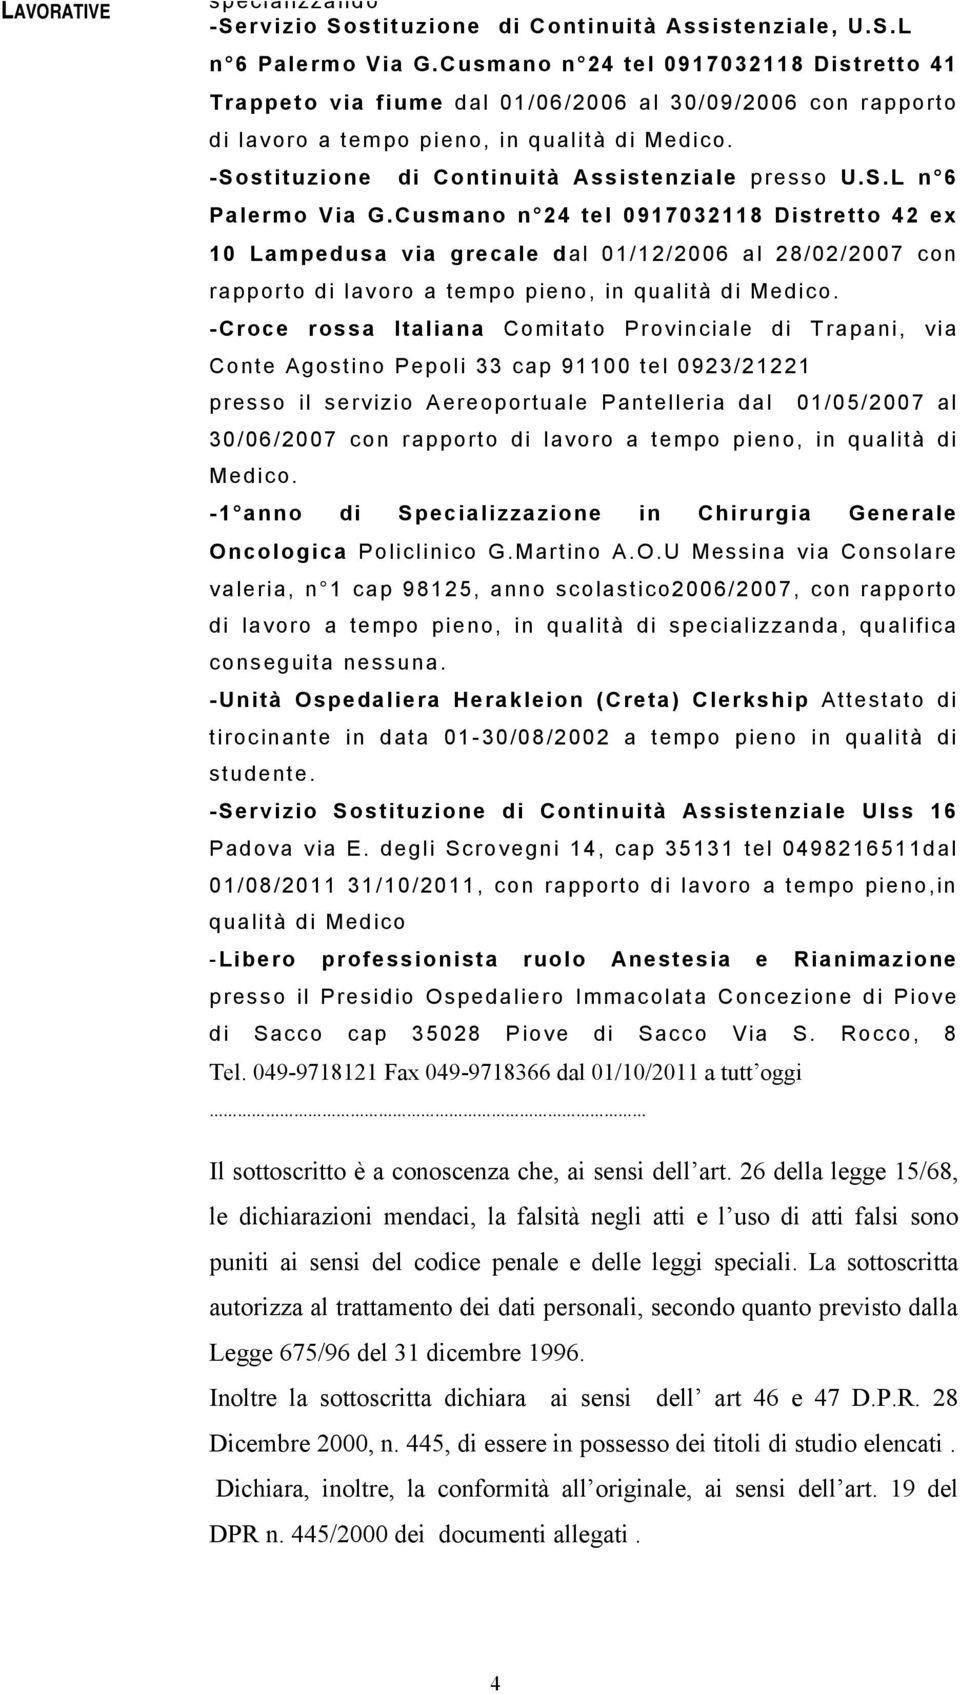 S.L n 6 Palermo Via G.Cusmano n 24 tel 0917032118 Distretto 42 ex 10 Lampedusa via grecale dal 01/12/2006 al 28/02/2007 con rapporto di lavoro a tempo pieno, in qualità di Medico.